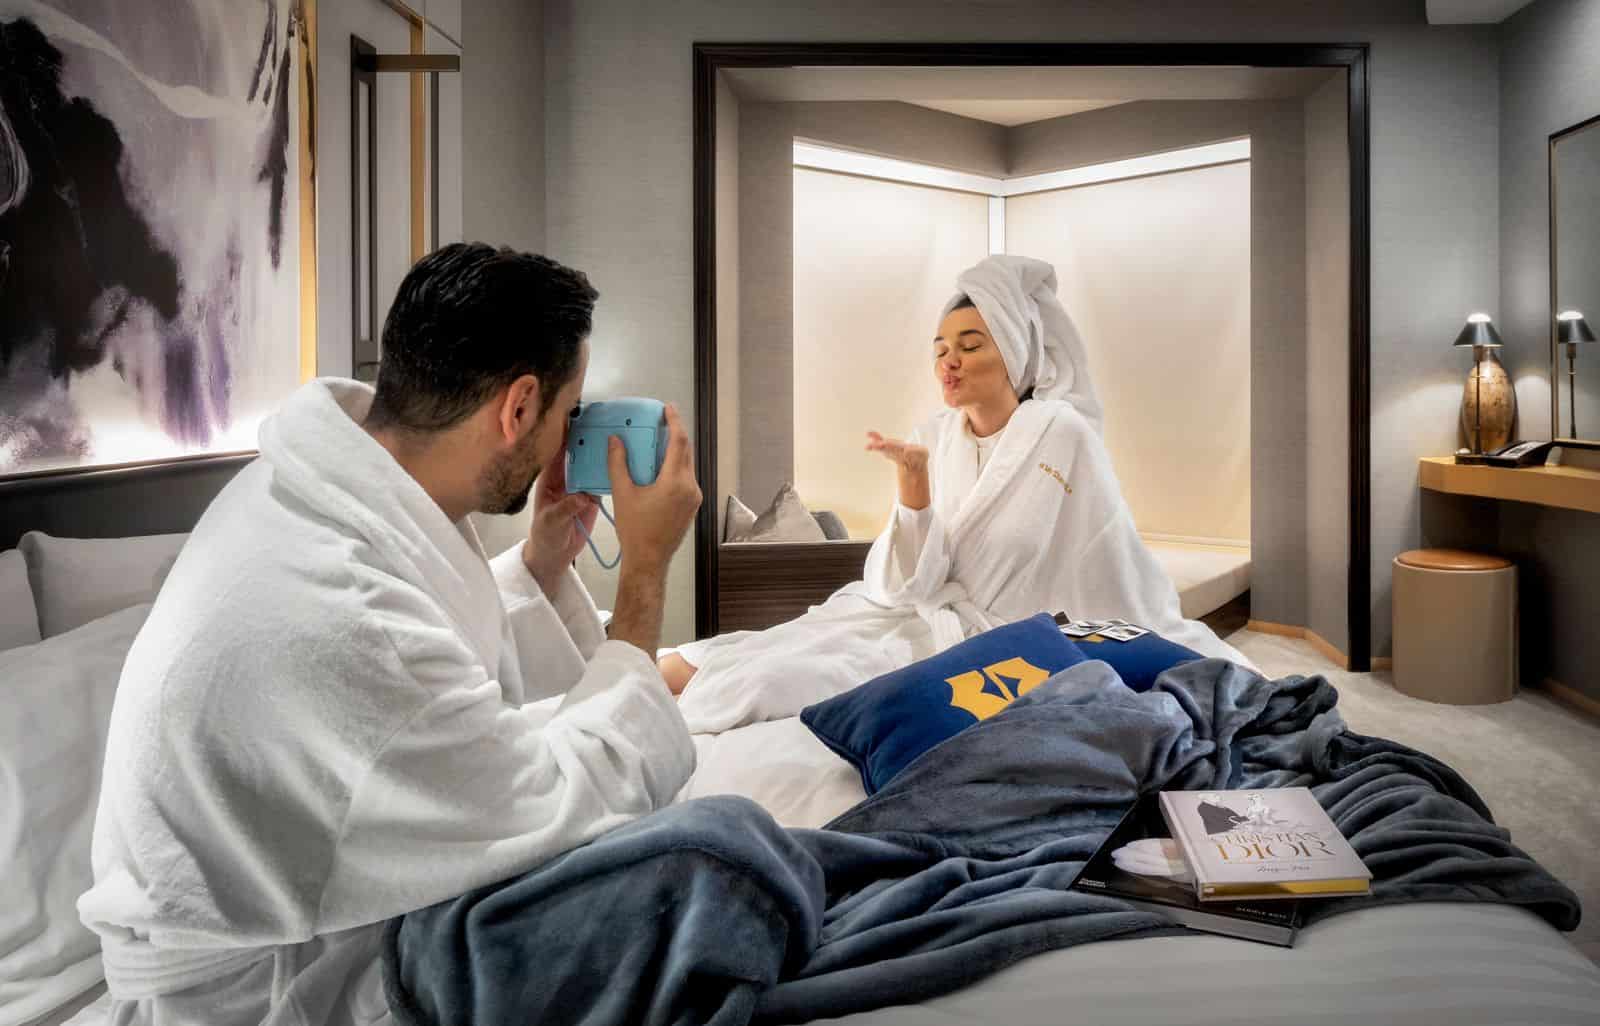 Shangri-La Hotel Dubai lanza la primera habitación instagrameable en el Medio Oriente